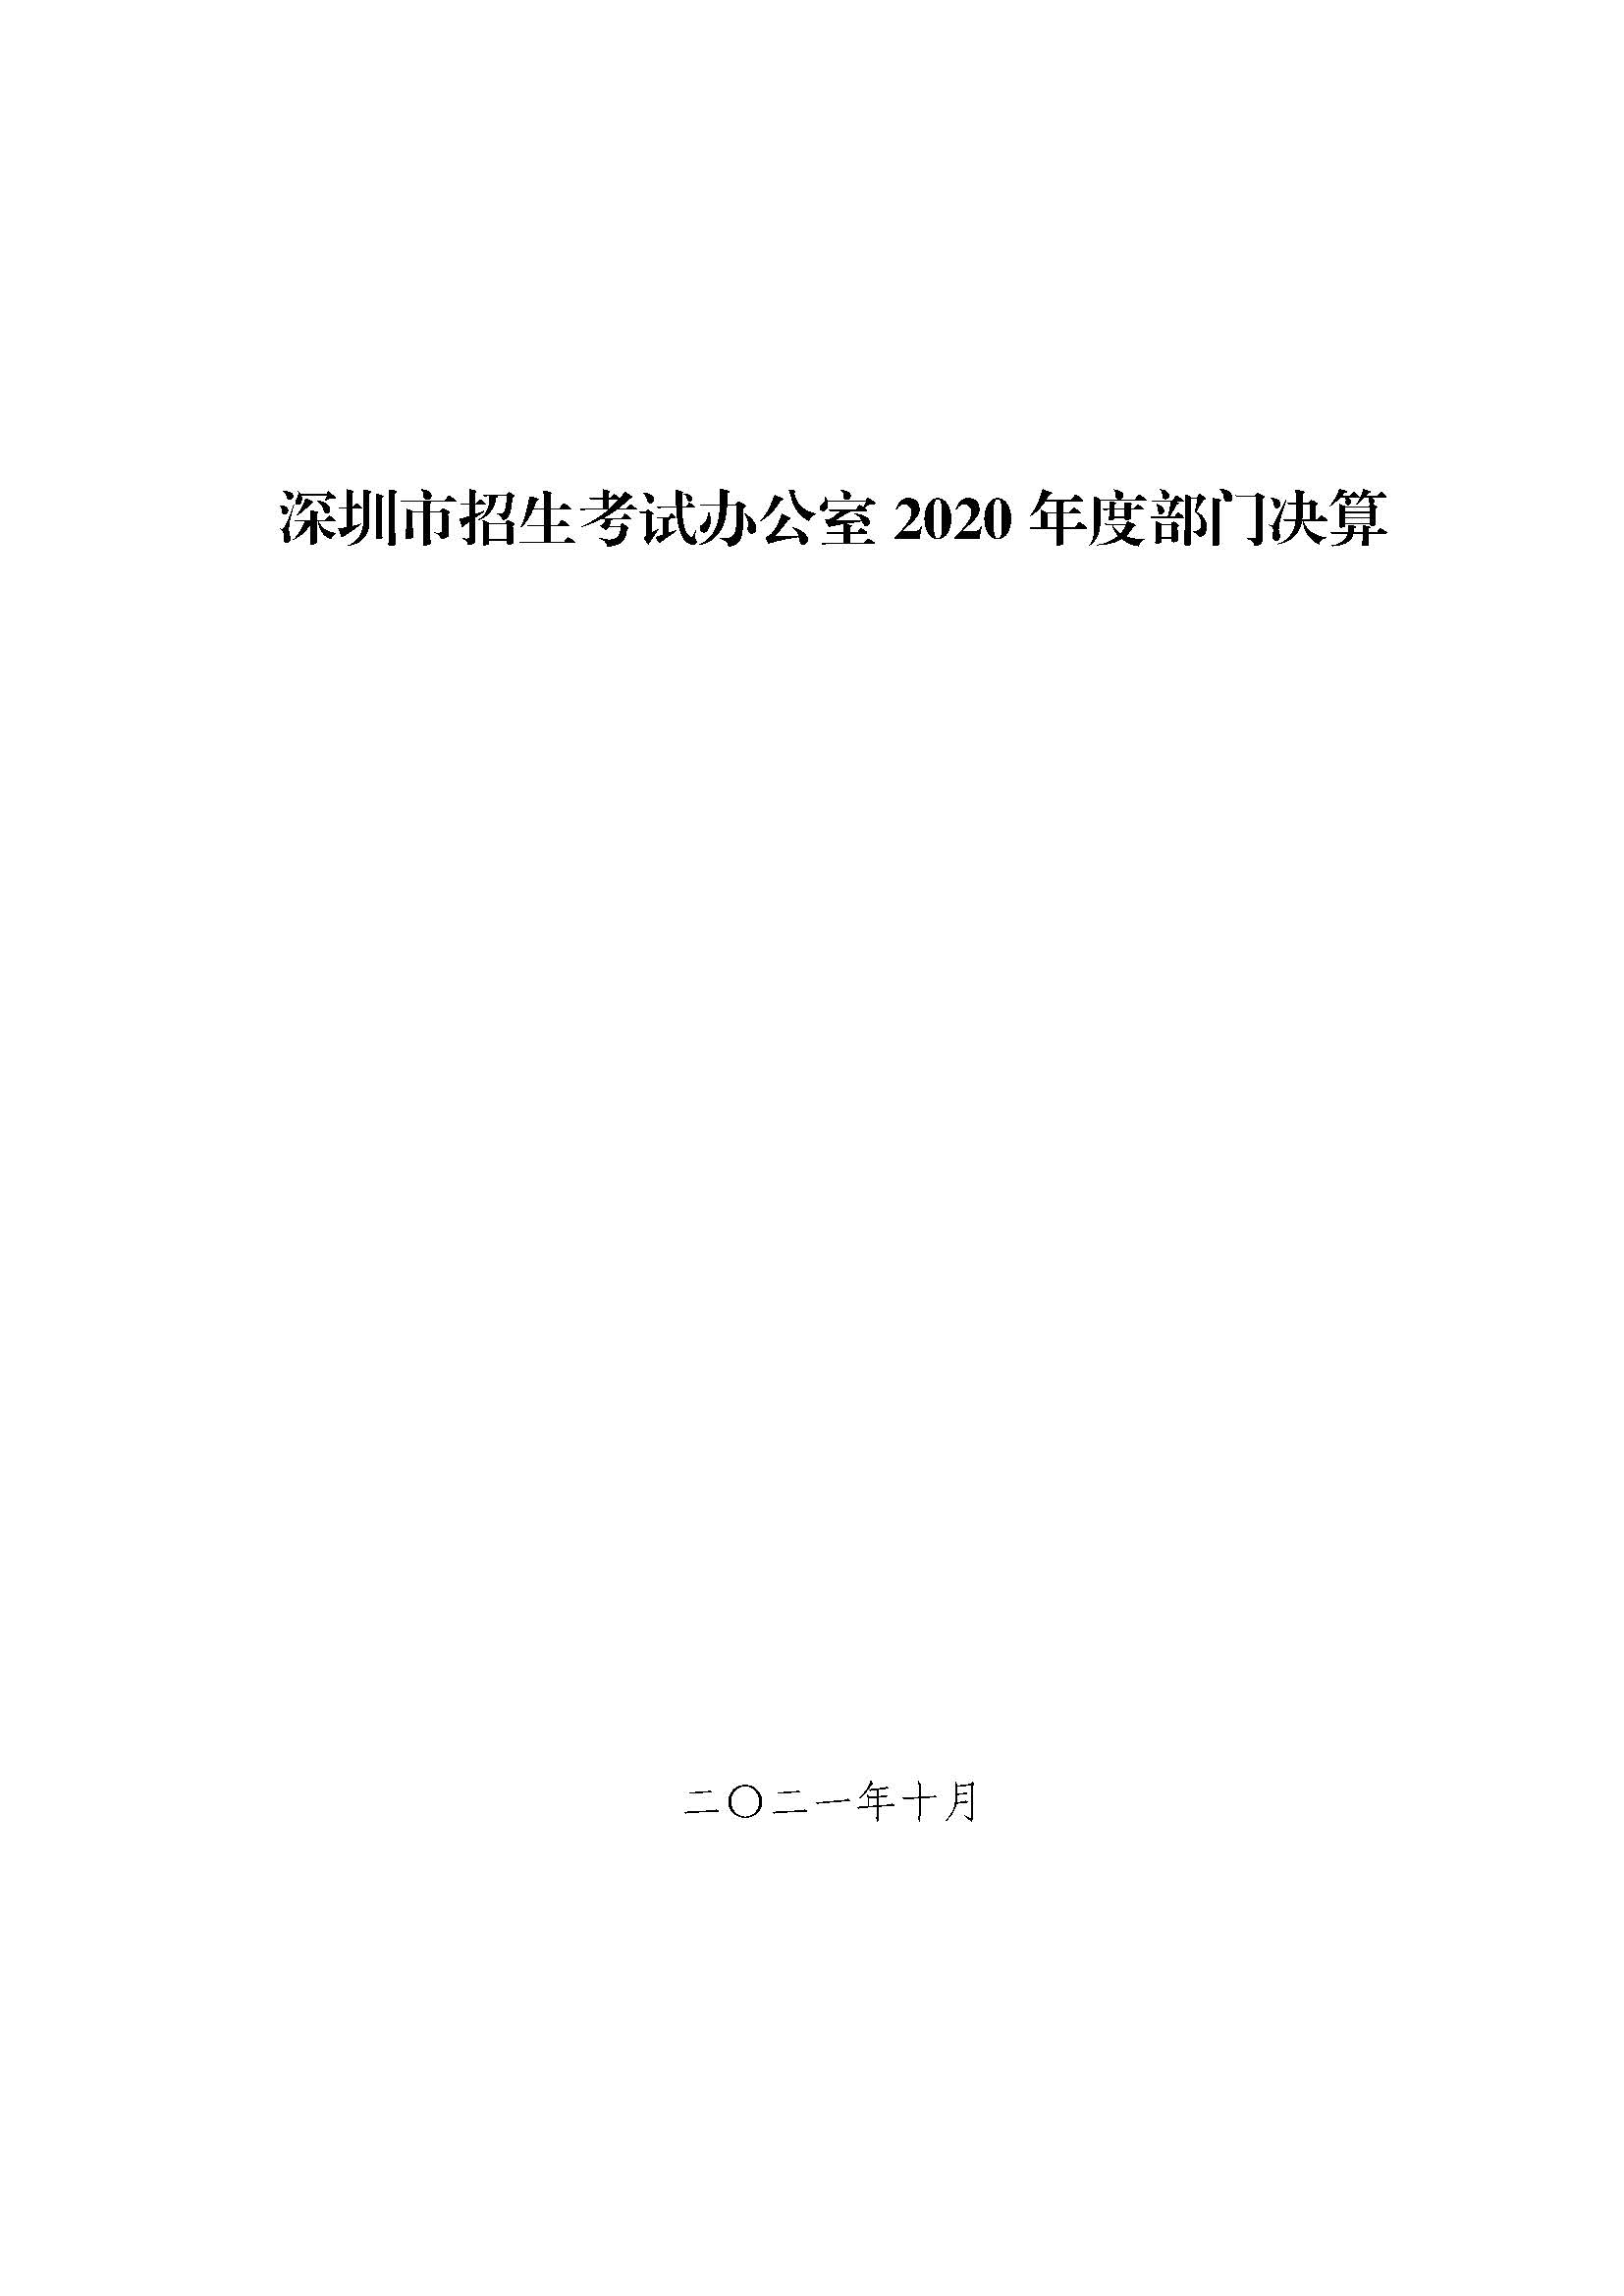 深圳市招生考试办公室2020年度部门决算_页面_01.jpg